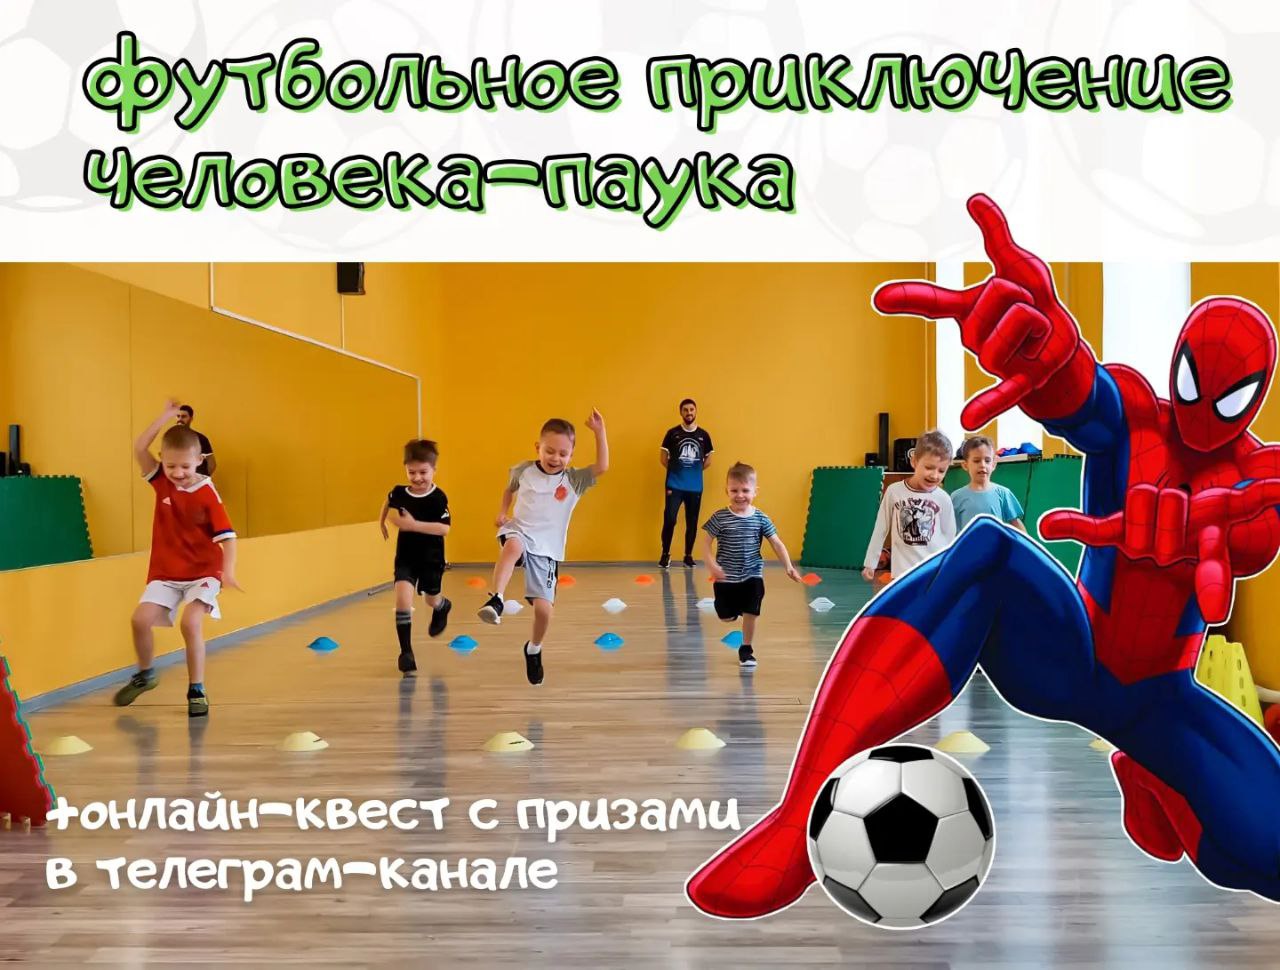 «Футбольное приключение Человека-Паука»